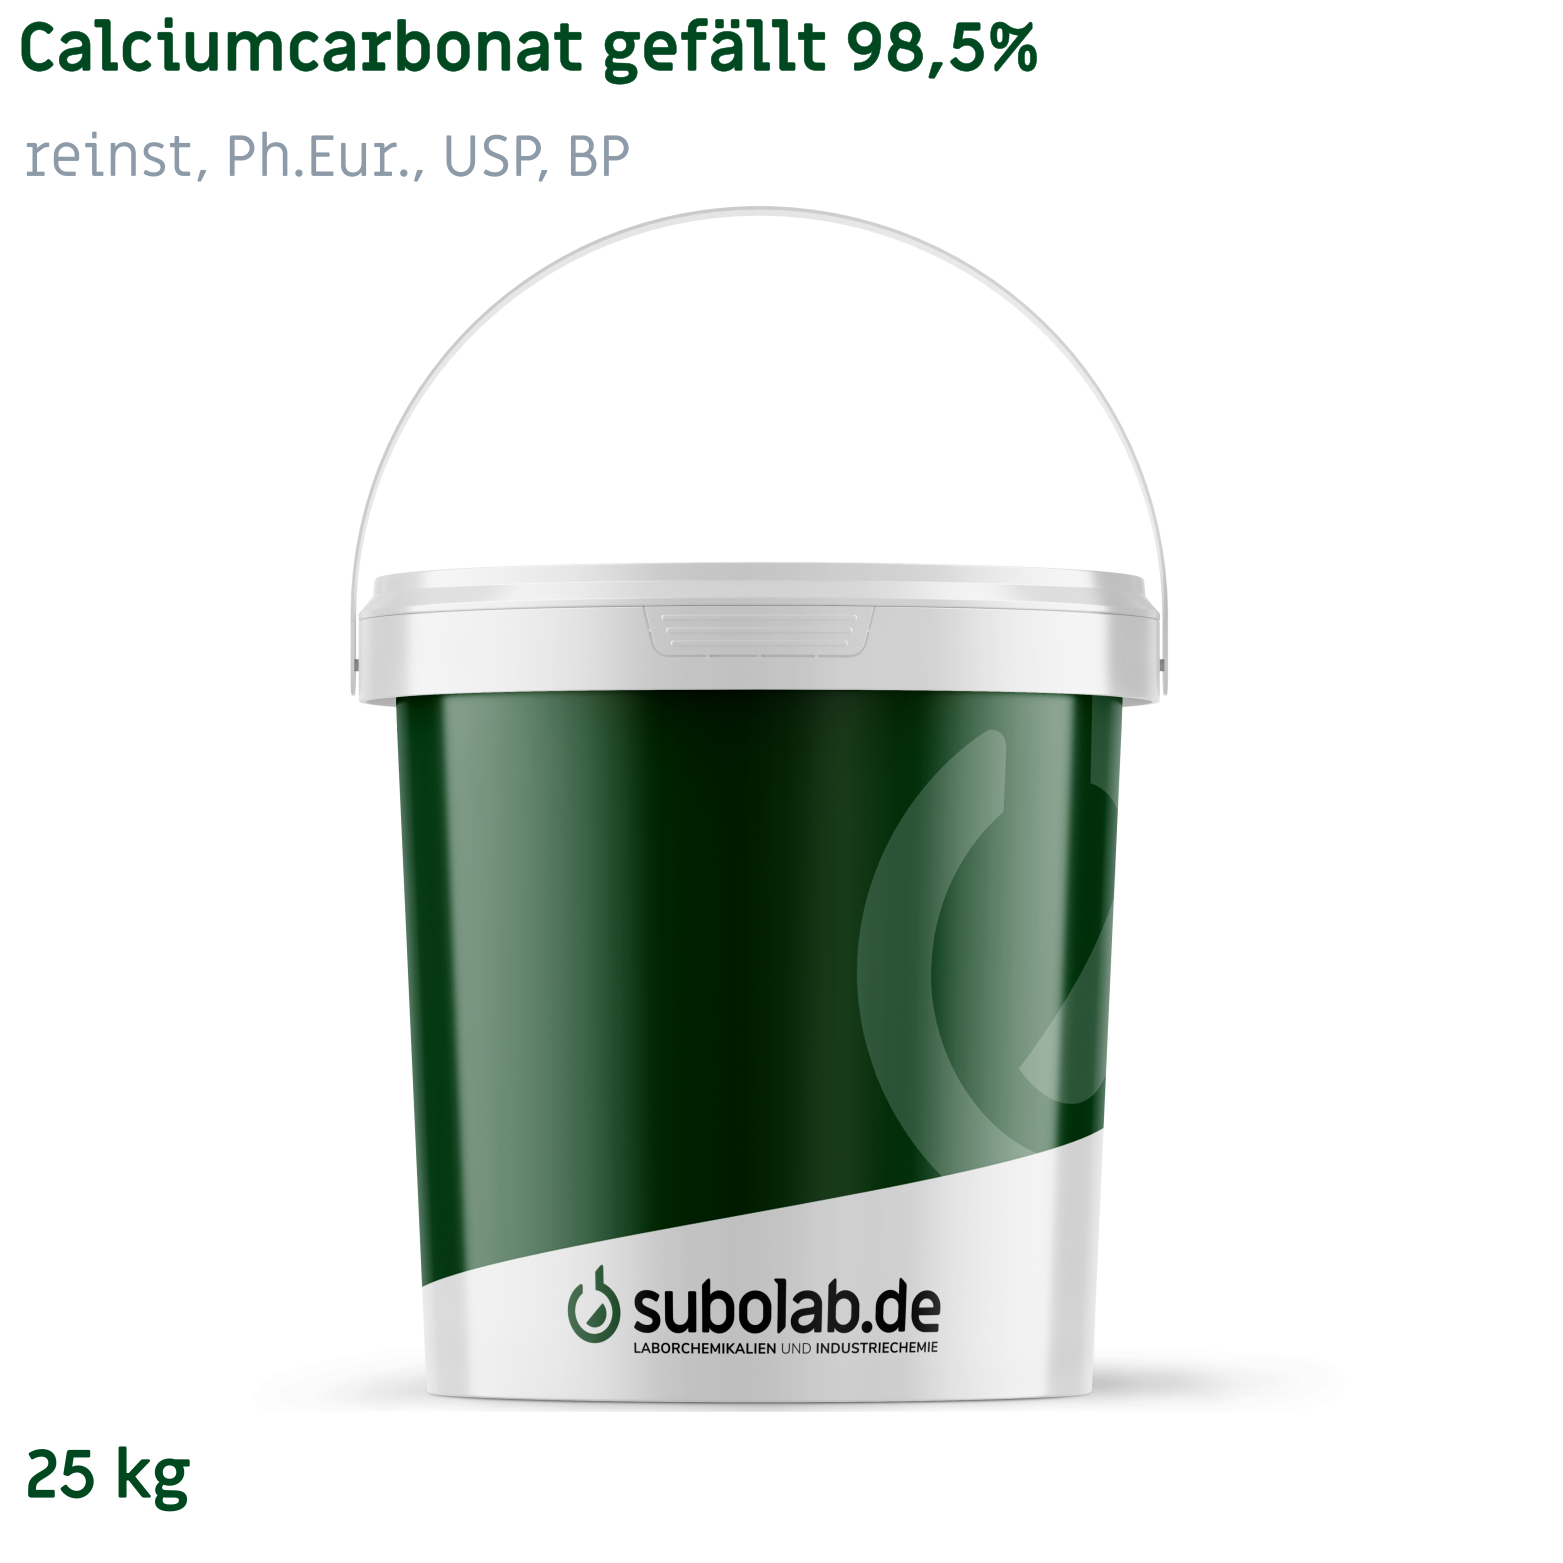 Bild von Calciumcarbonat gefällt 98,5% reinst, Ph.Eur., USP, BP (25 kg)